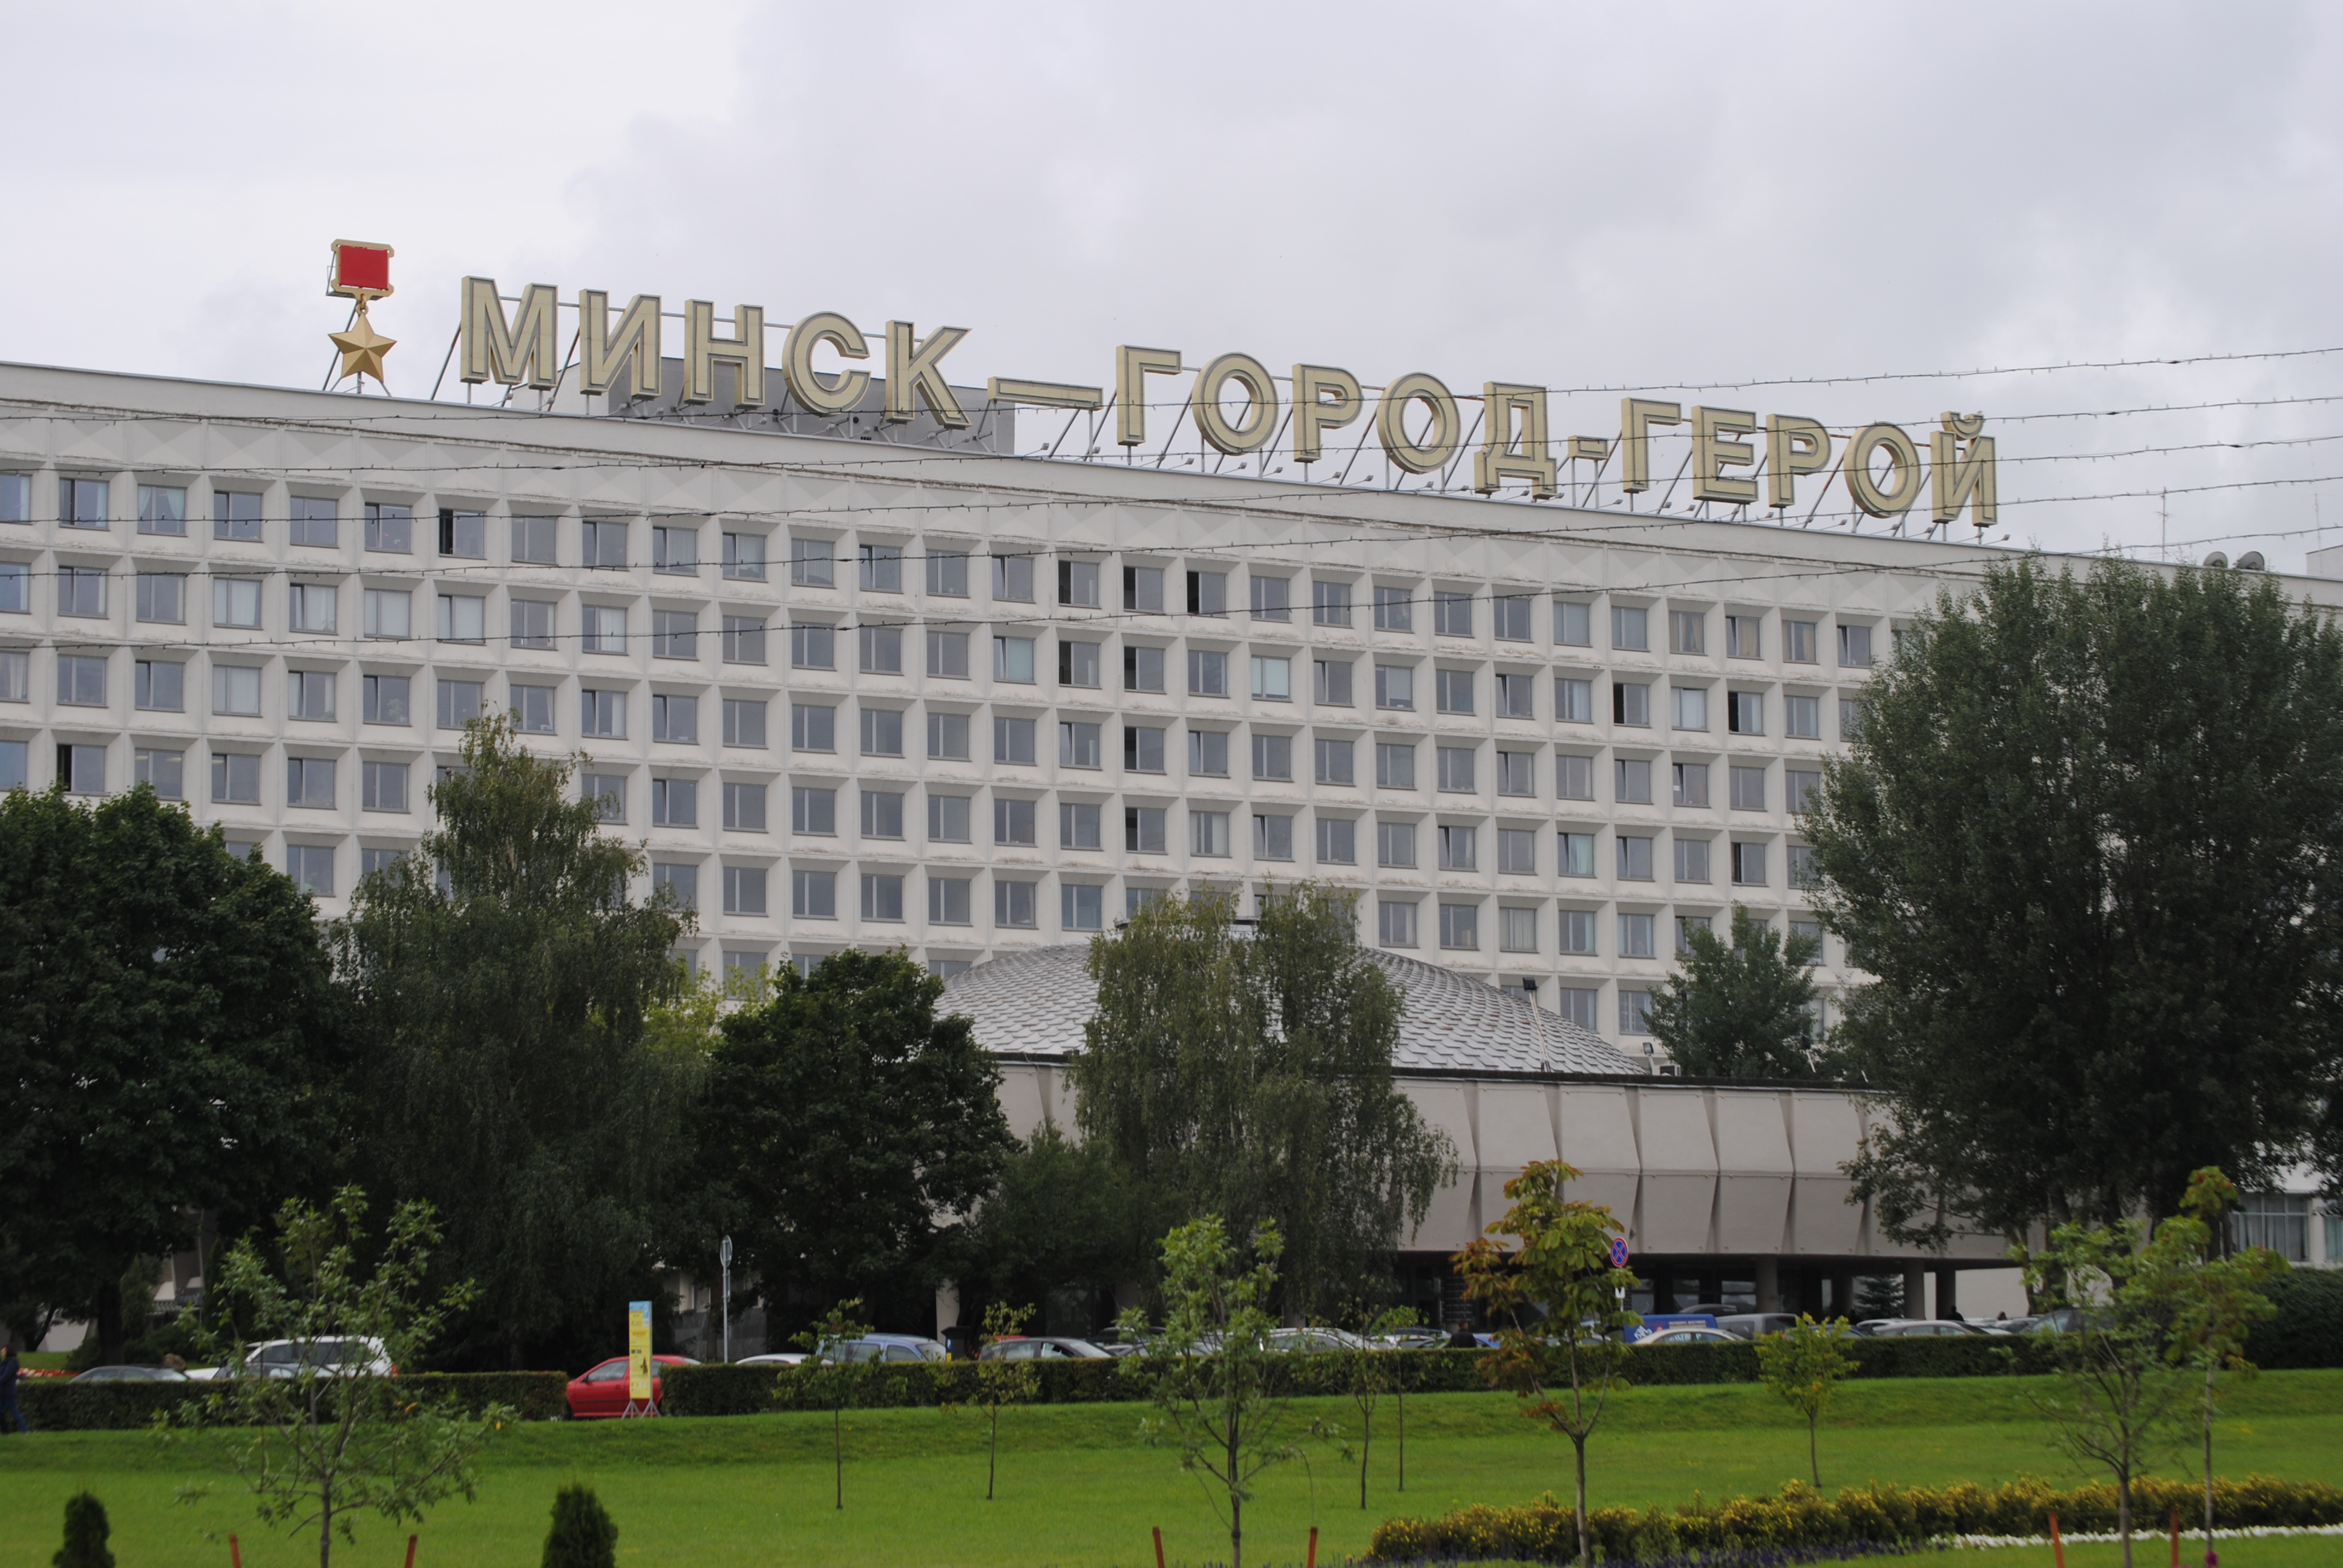 Edificio en el que se puede leer la inscripción ''Minsk ciudad heroica''